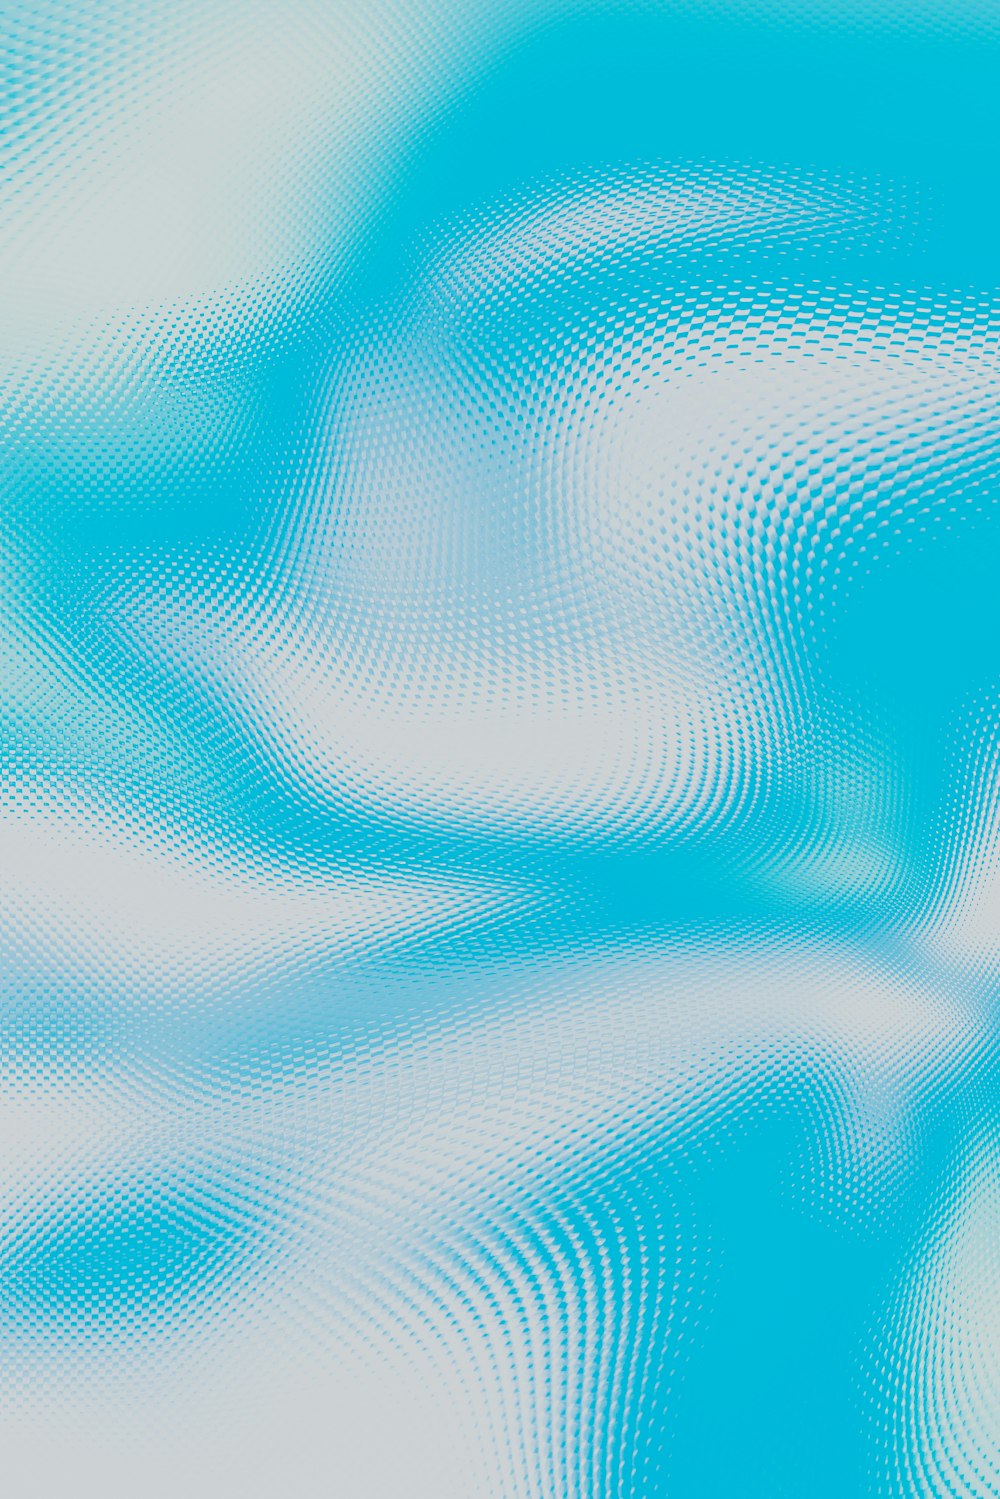 um fundo azul e branco com linhas onduladas